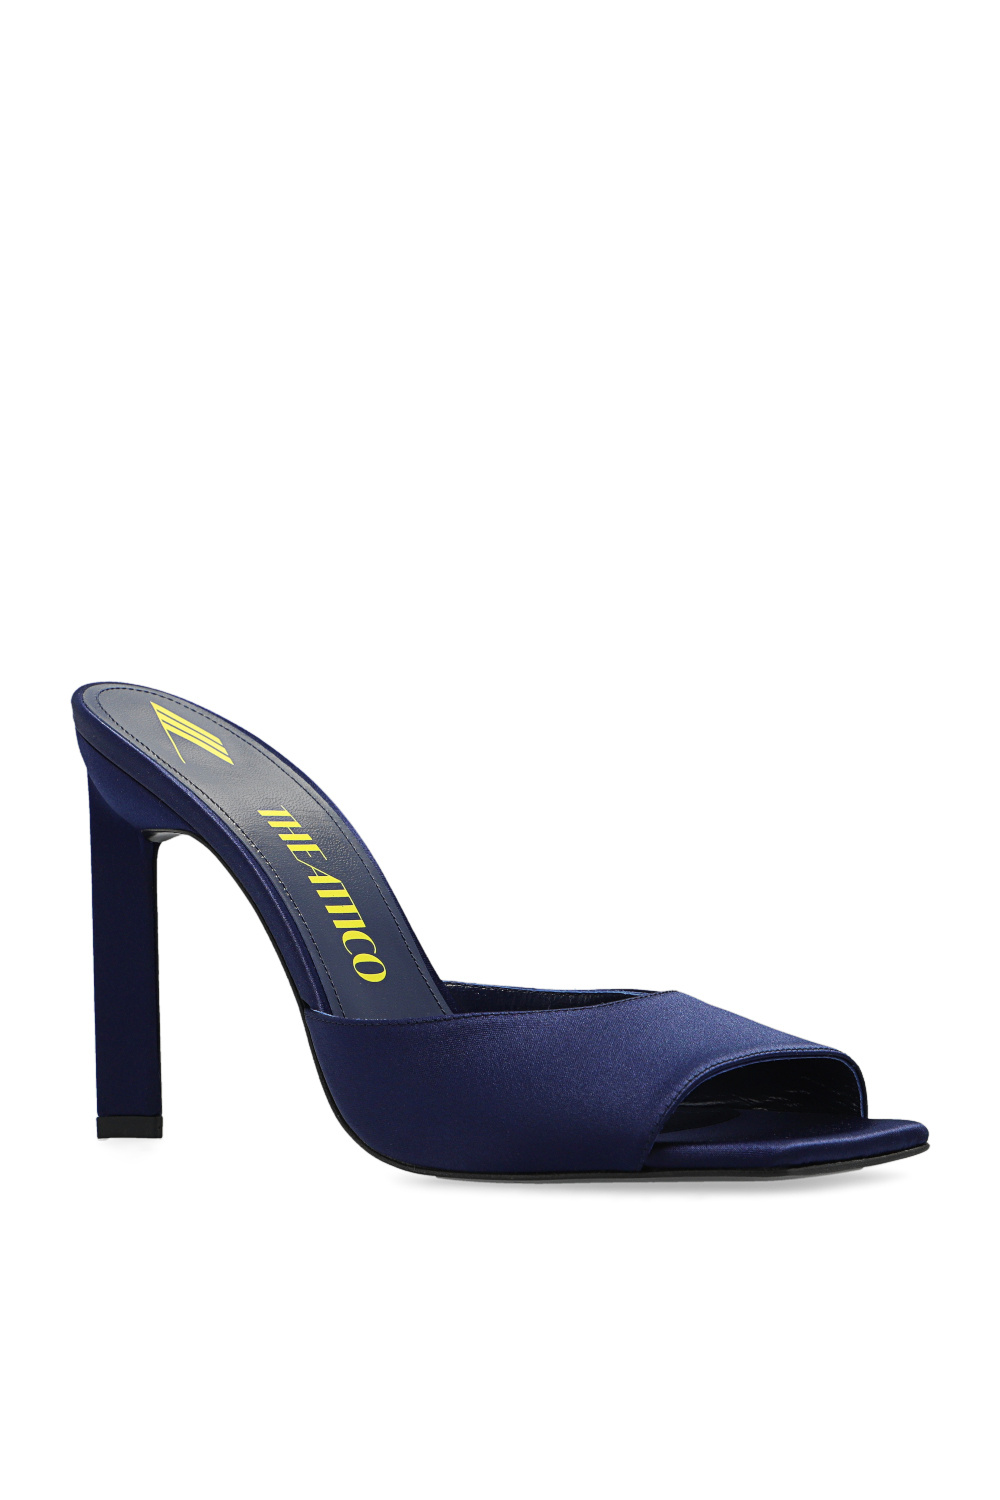 The Attico ‘Kaia’ heeled slides